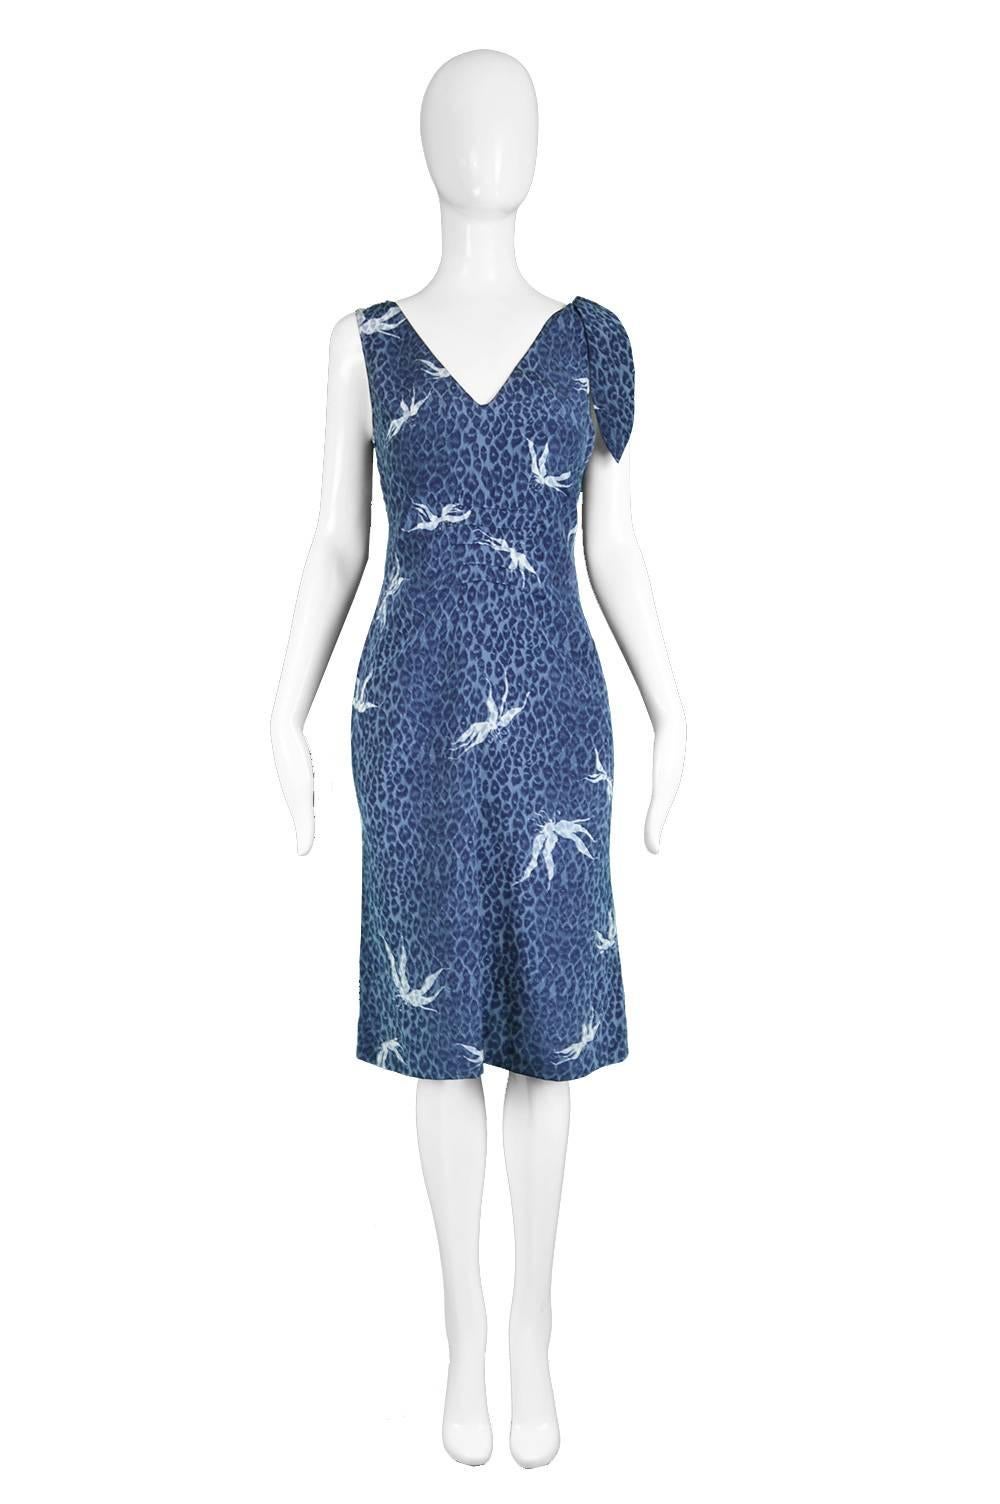 Chloé by Stella Mccartney Vintage Sleeveless Blue Silk Leopard Dress, S/S 1999

Estimated Size: UK 12/ US 8/ EU 40. Please check measurements.
Bust - 36” / 91cm
Waist - 32” / 81cm
Hips -40” / 101cm
Length (Shoulder to Hem) - 42” /106cm

Condition: